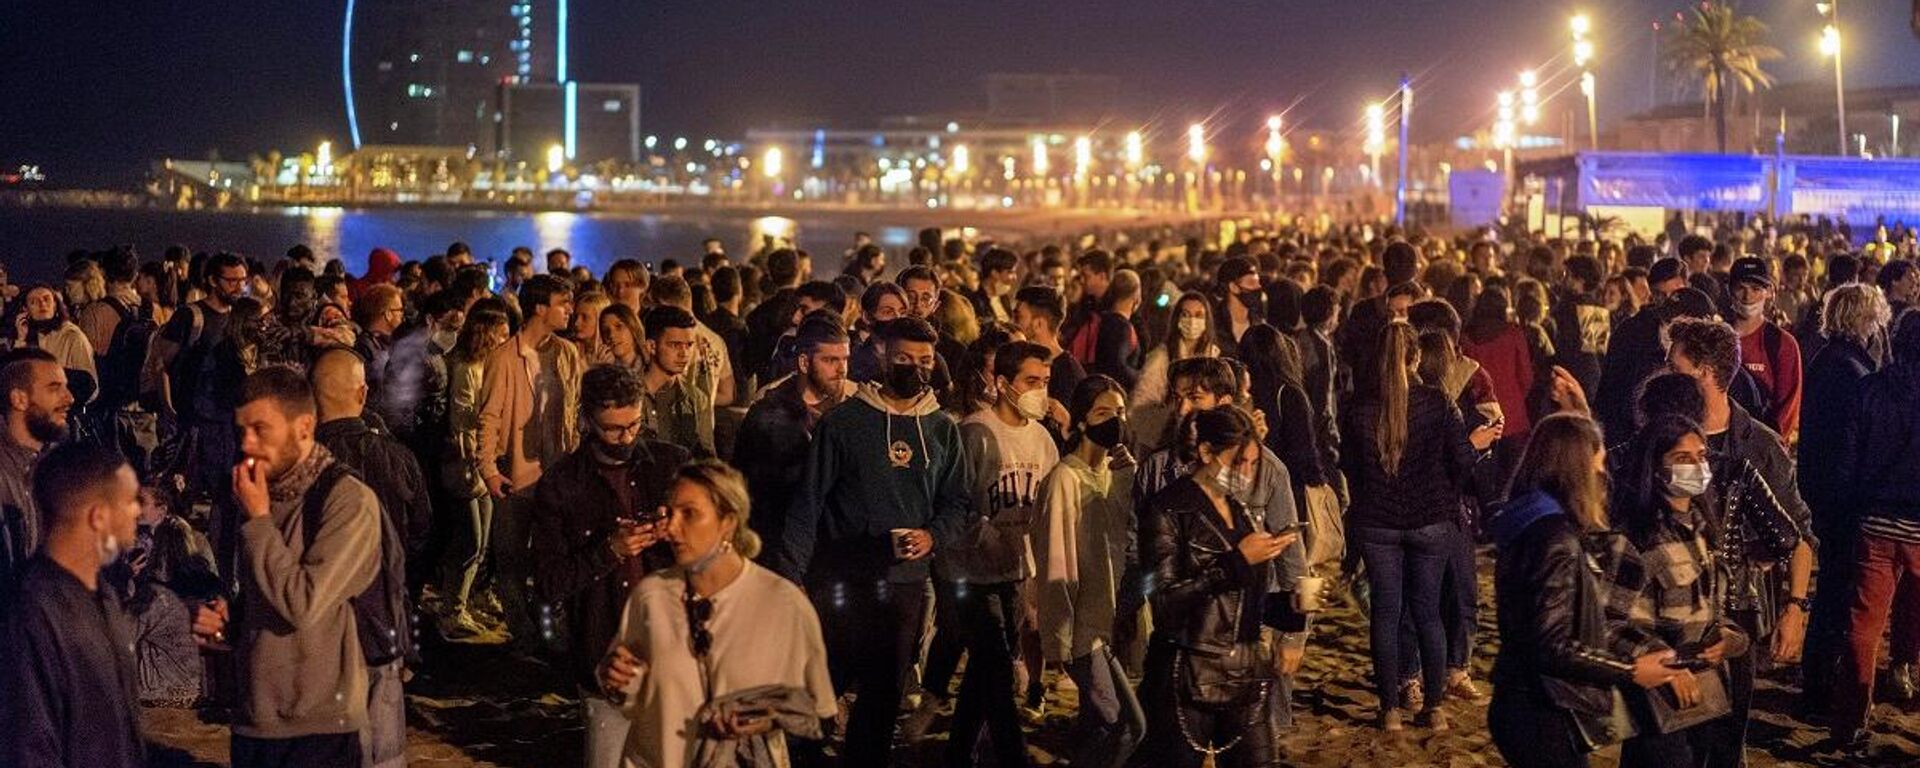 La gente concurrió a una playa de Barcelona una vez terminado el estado de alarma, España, el 9 de mayo de 2021  - Sputnik Mundo, 1920, 16.05.2021